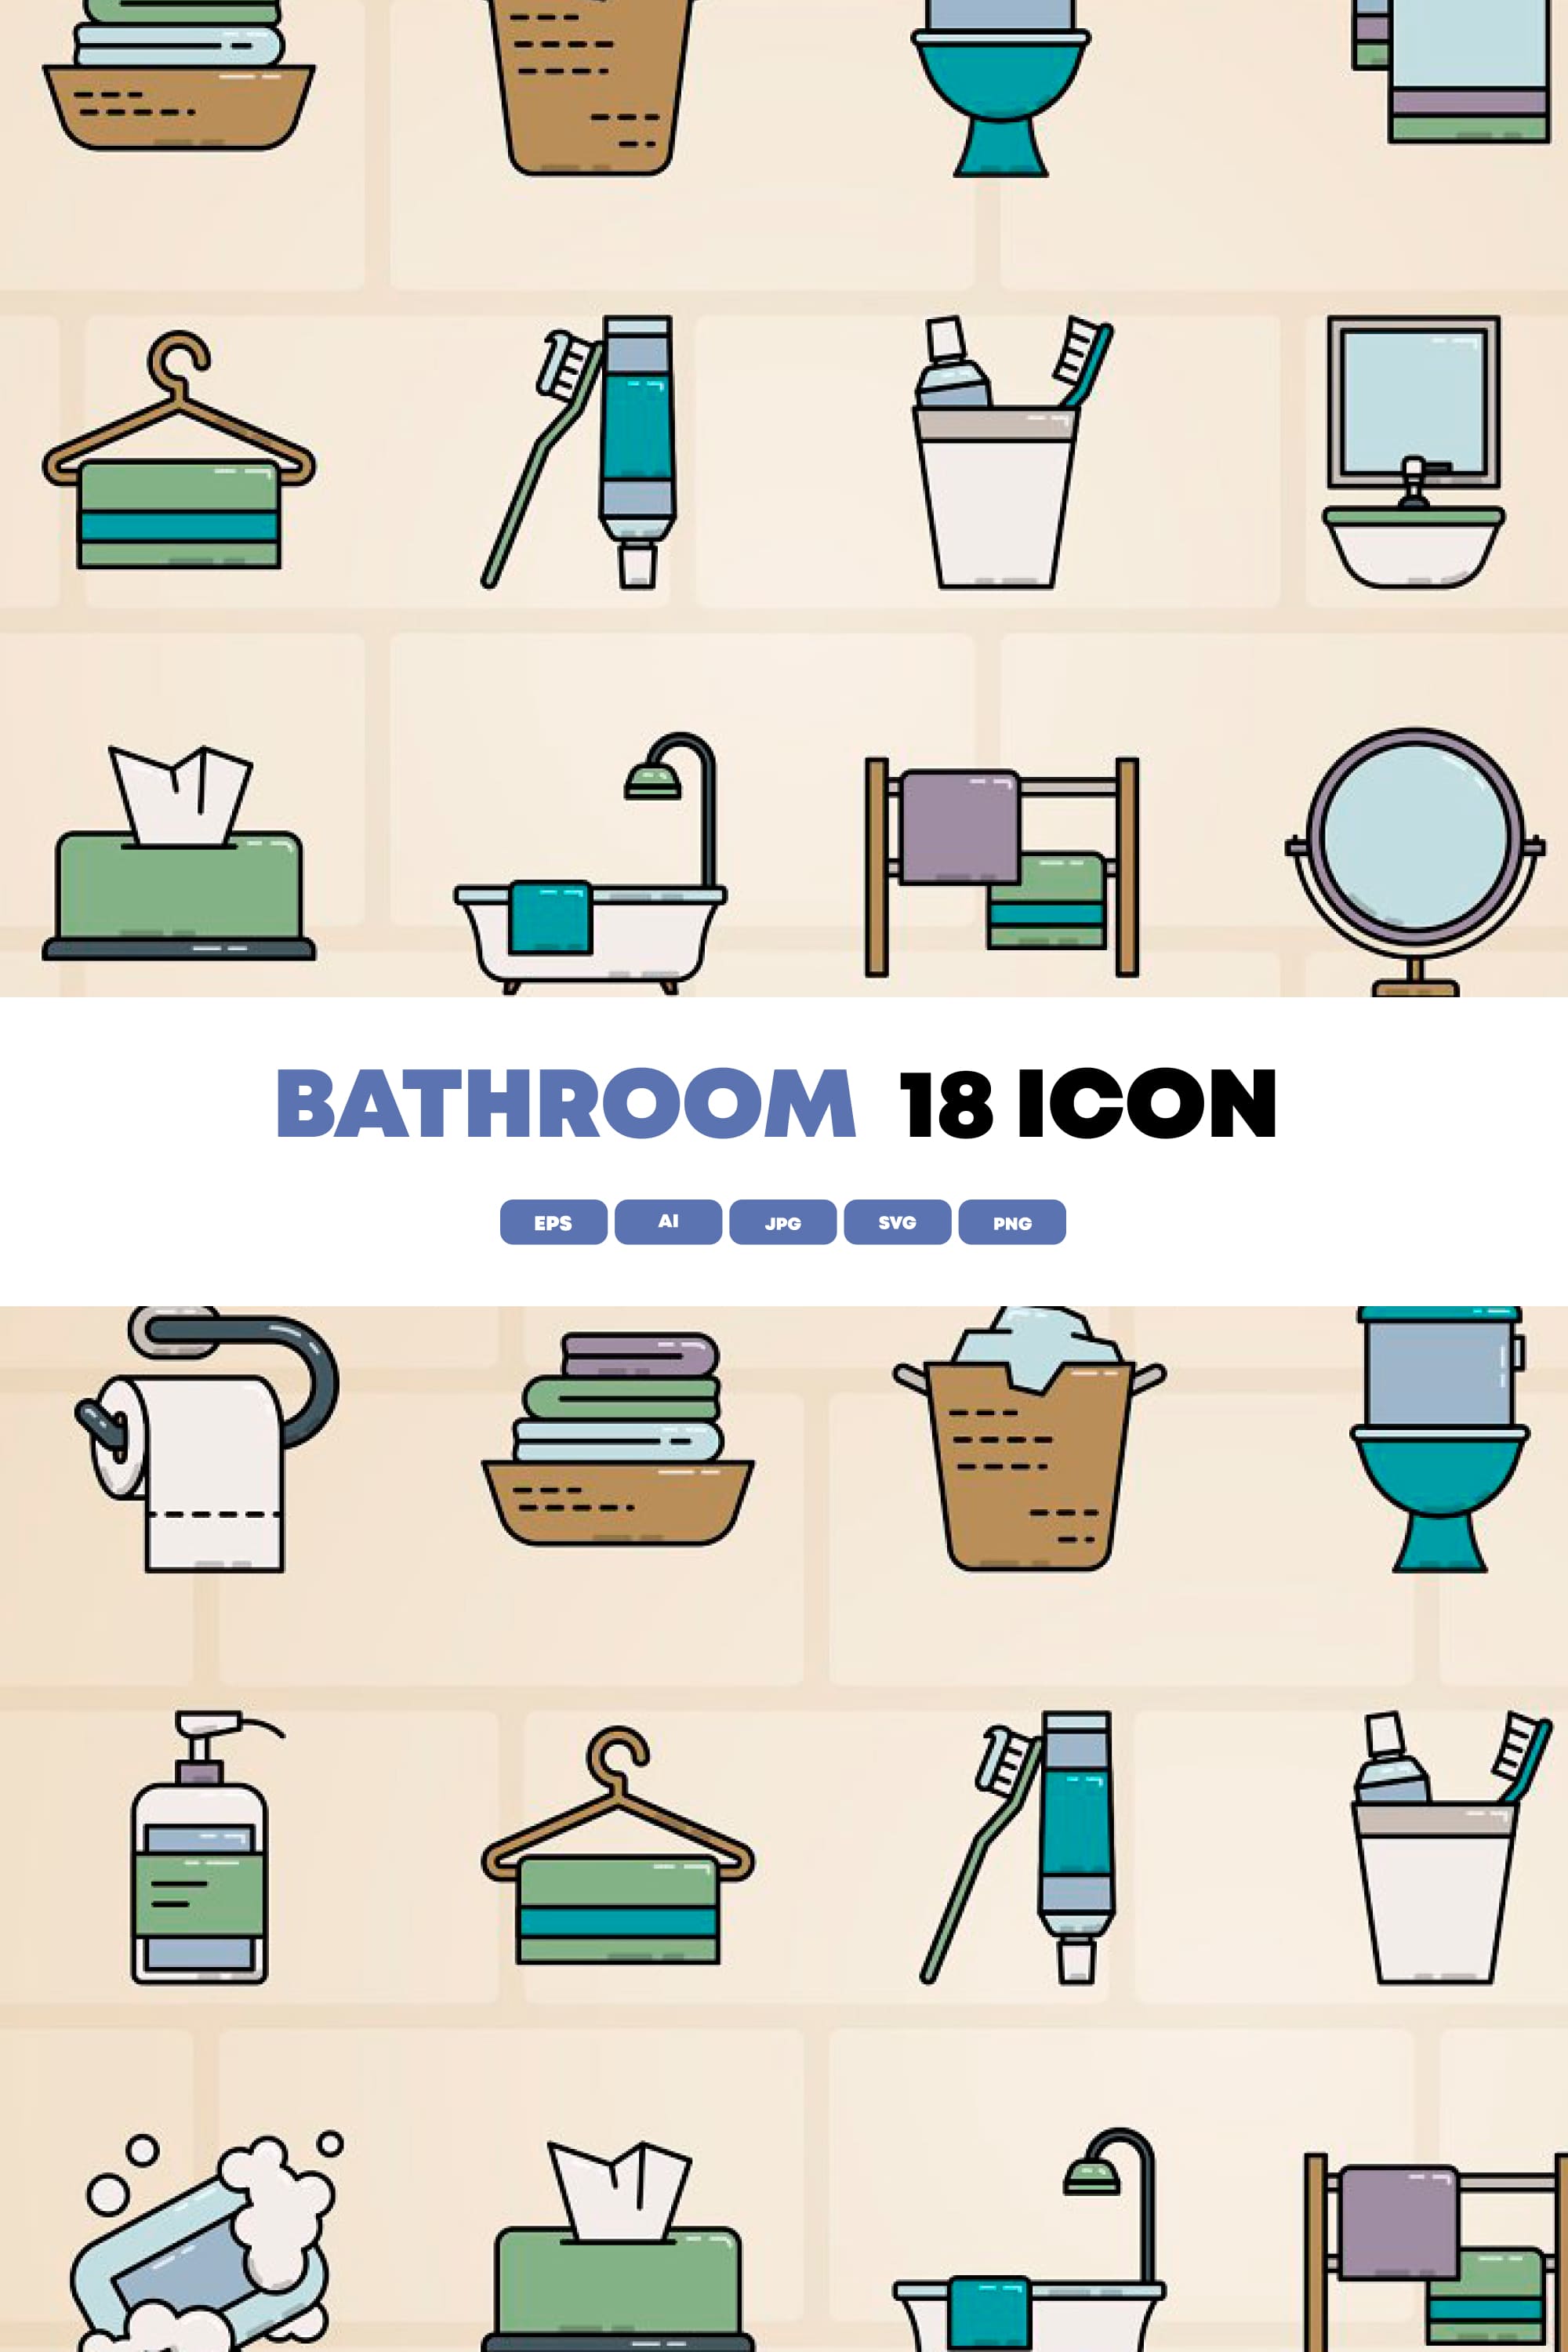 18 bathroom icon pinterest